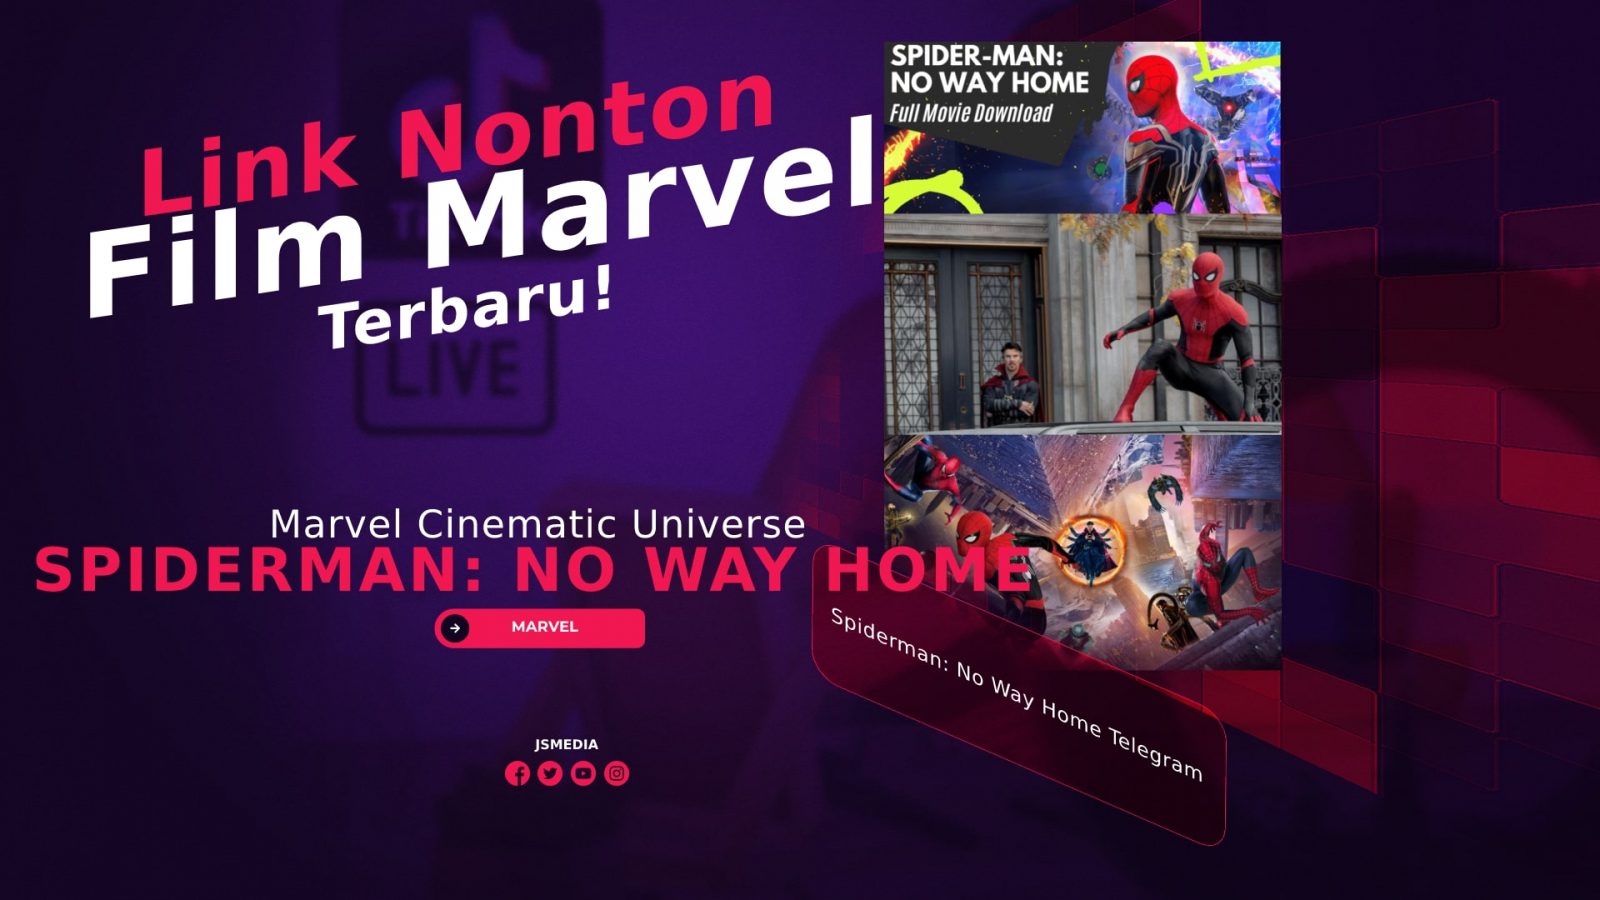 Indo way spiderman no home download sub Nonton Dan